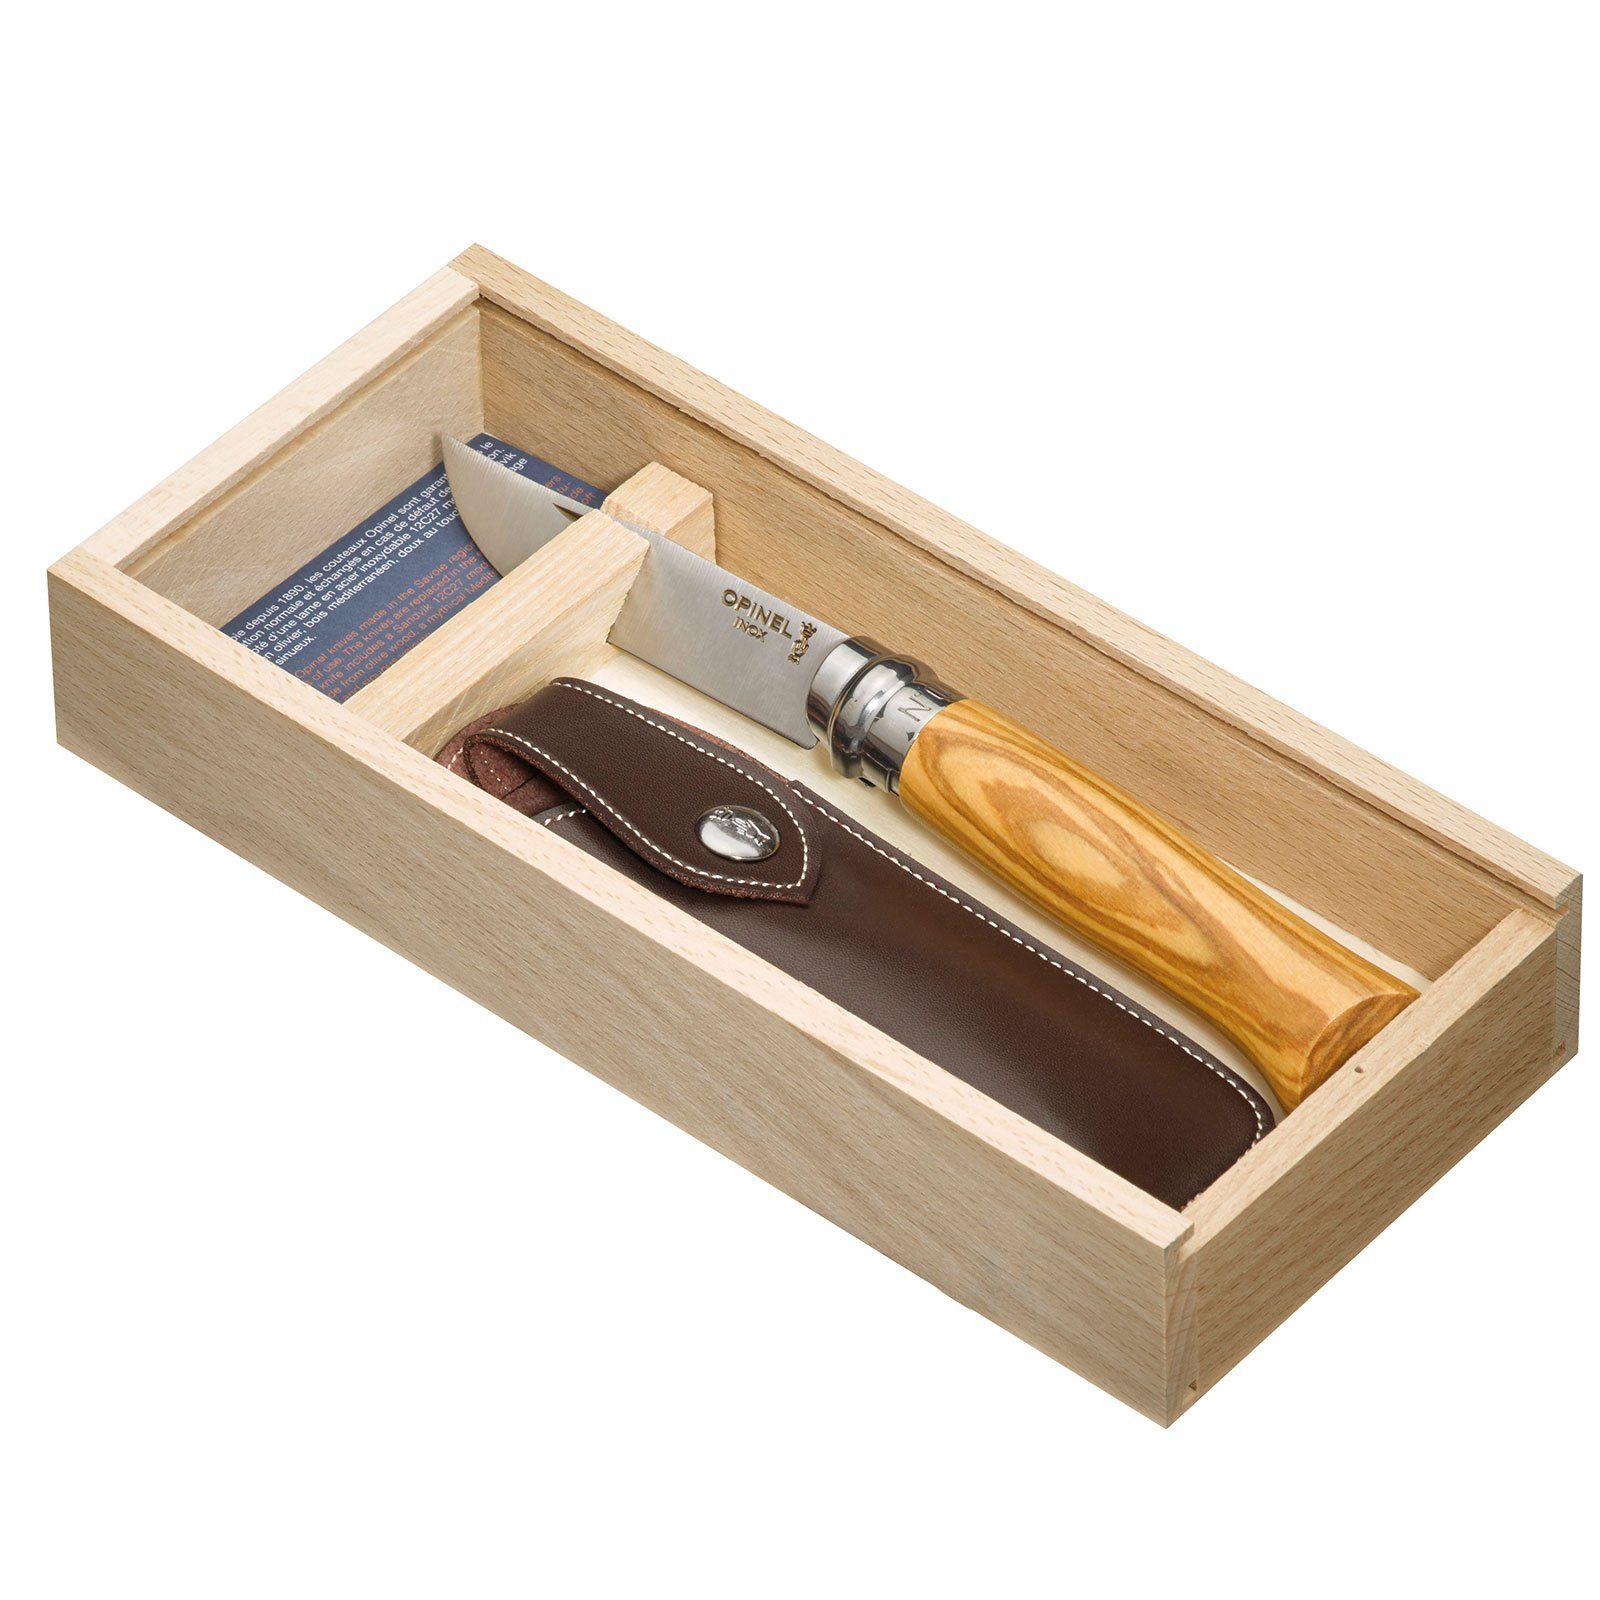 Holz Oliven Klappmesser 8 Set No. Opinel Taschenmesser + Etui, Messer Taschenmesser Geschenk